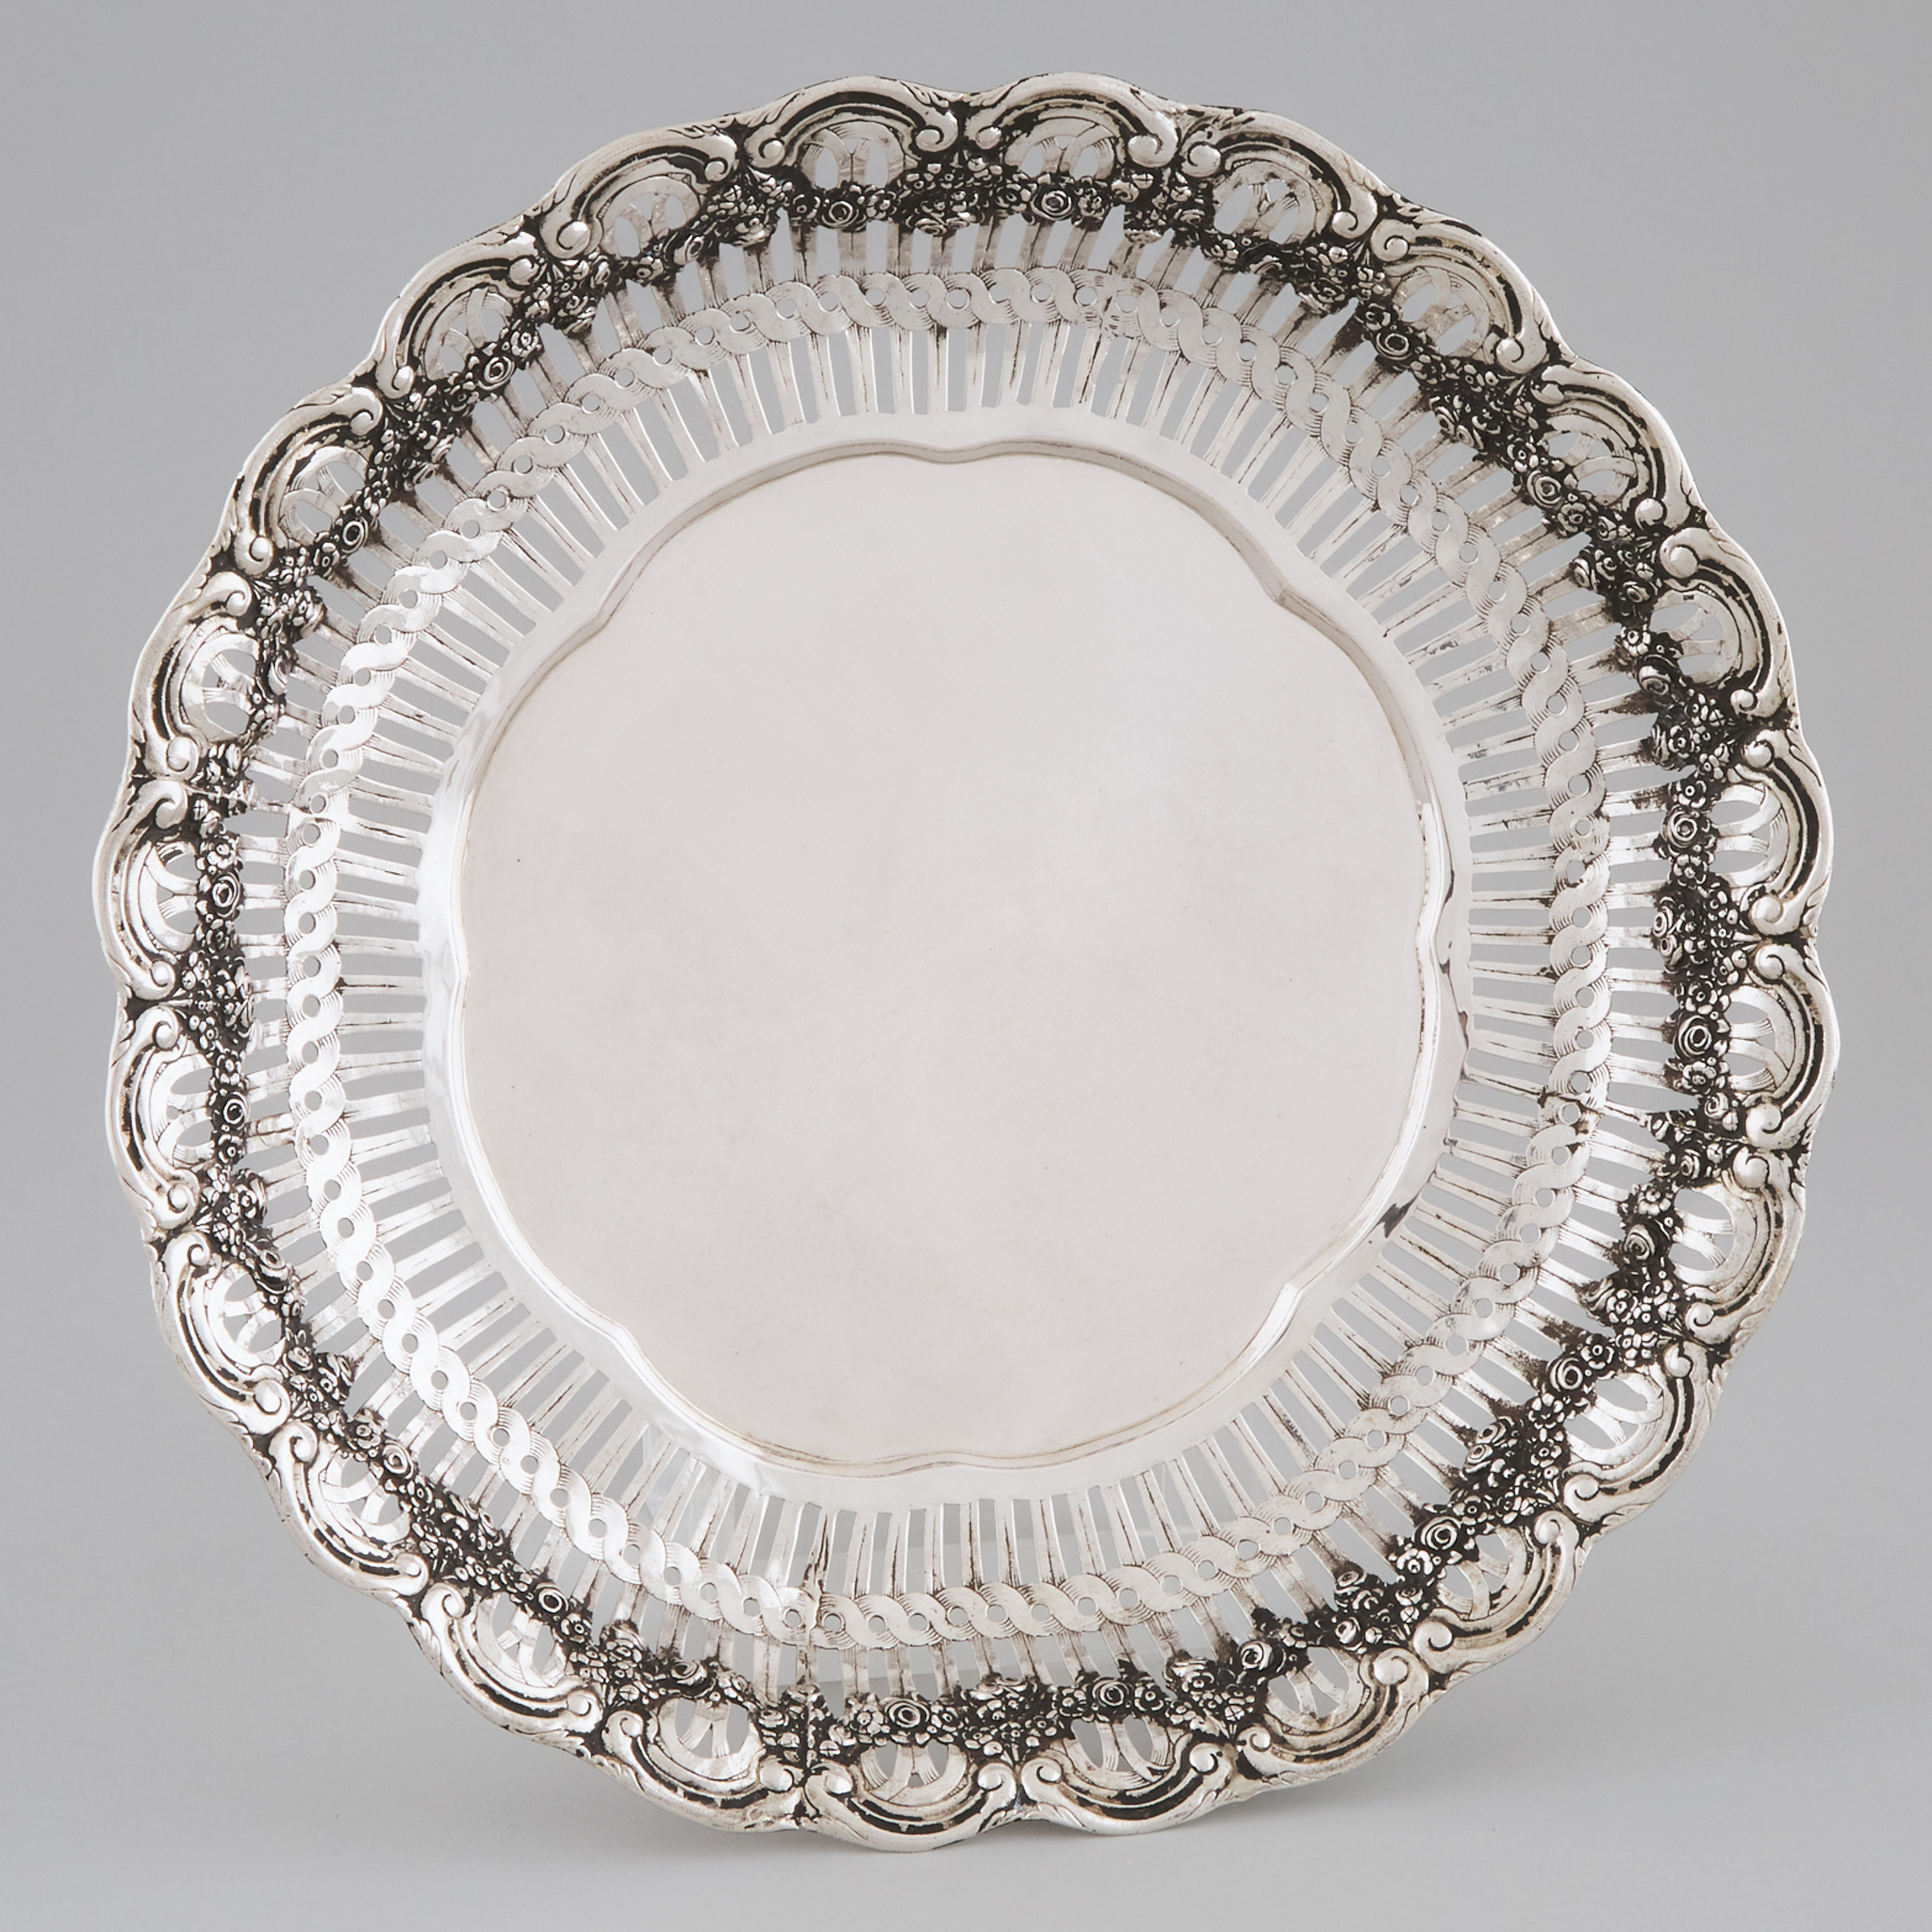 German Silver Pierced Circular Dish, early 20th century